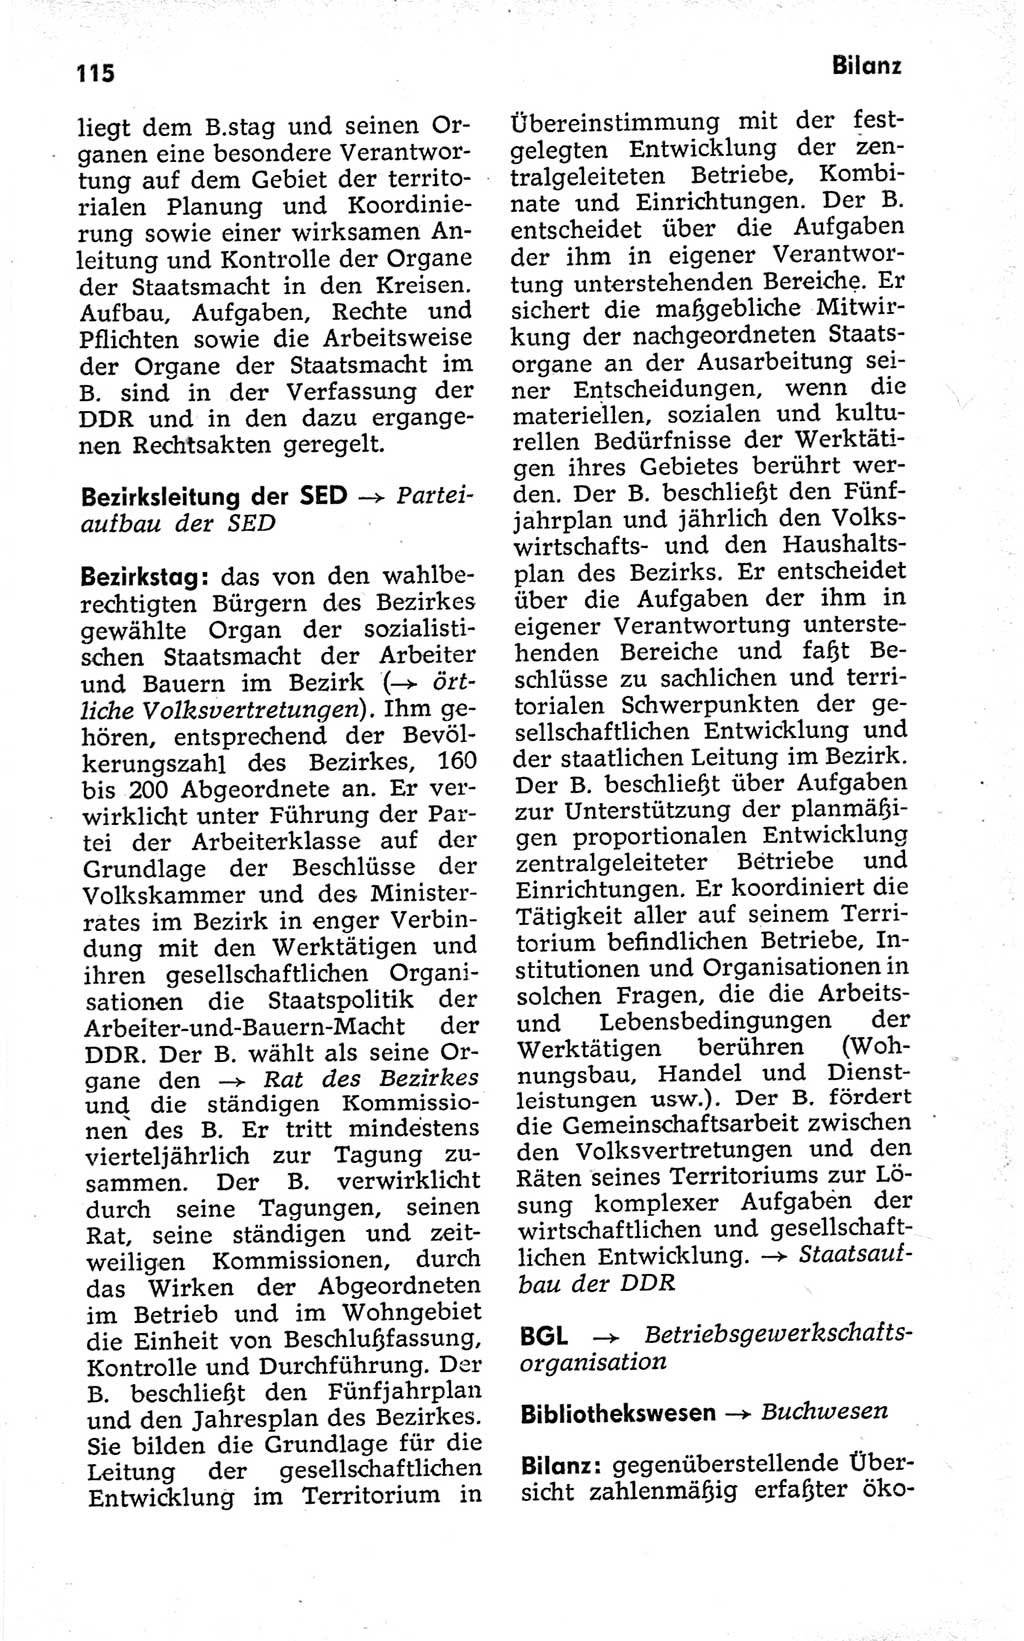 Kleines politisches Wörterbuch [Deutsche Demokratische Republik (DDR)] 1973, Seite 115 (Kl. pol. Wb. DDR 1973, S. 115)